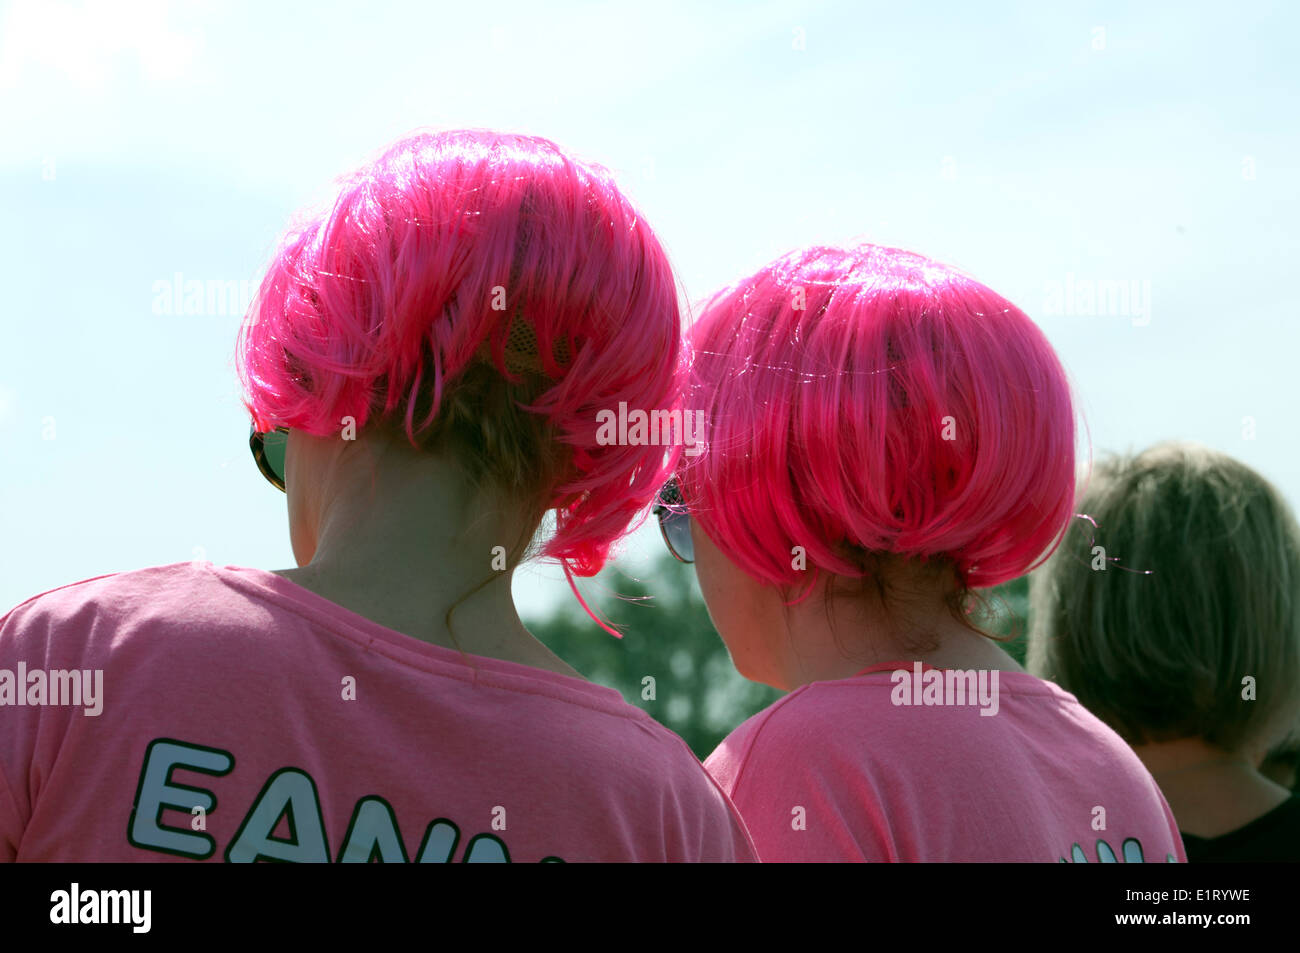 Carrera por la vida, evento de caridad Cancer Research UK, mujeres que llevaban pelucas rosa. Foto de stock